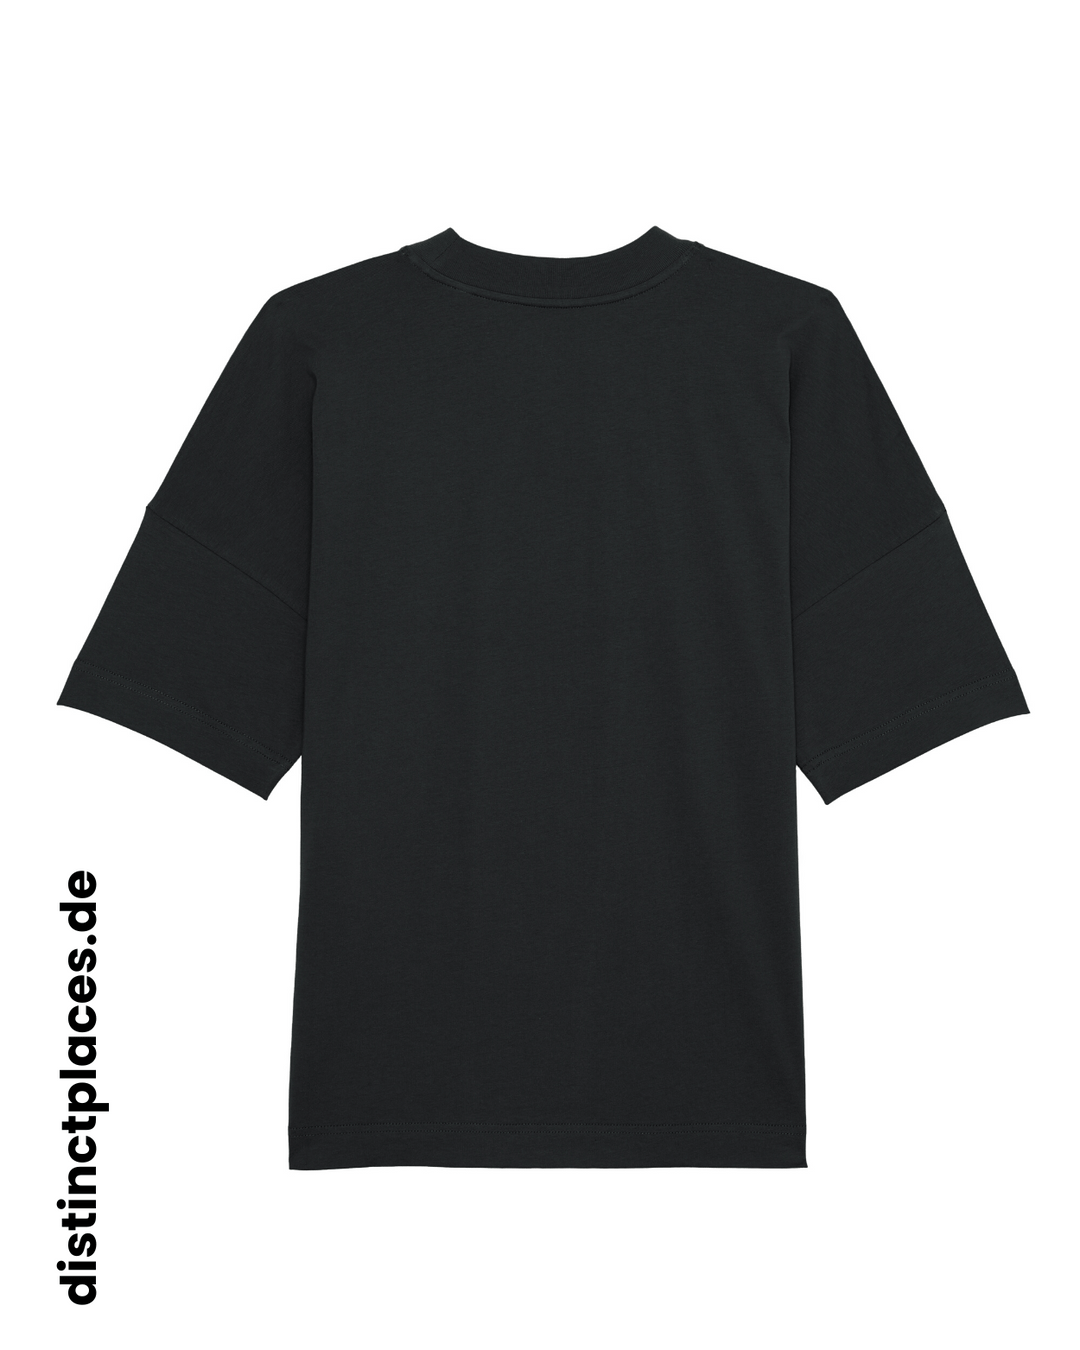 Schwarzes fairtrade, vegan und bio-baumwoll Oversized T-Shirt von hinten mit einem minimalistischem weißen Logo, beziehungsweise Wappen für Berlin